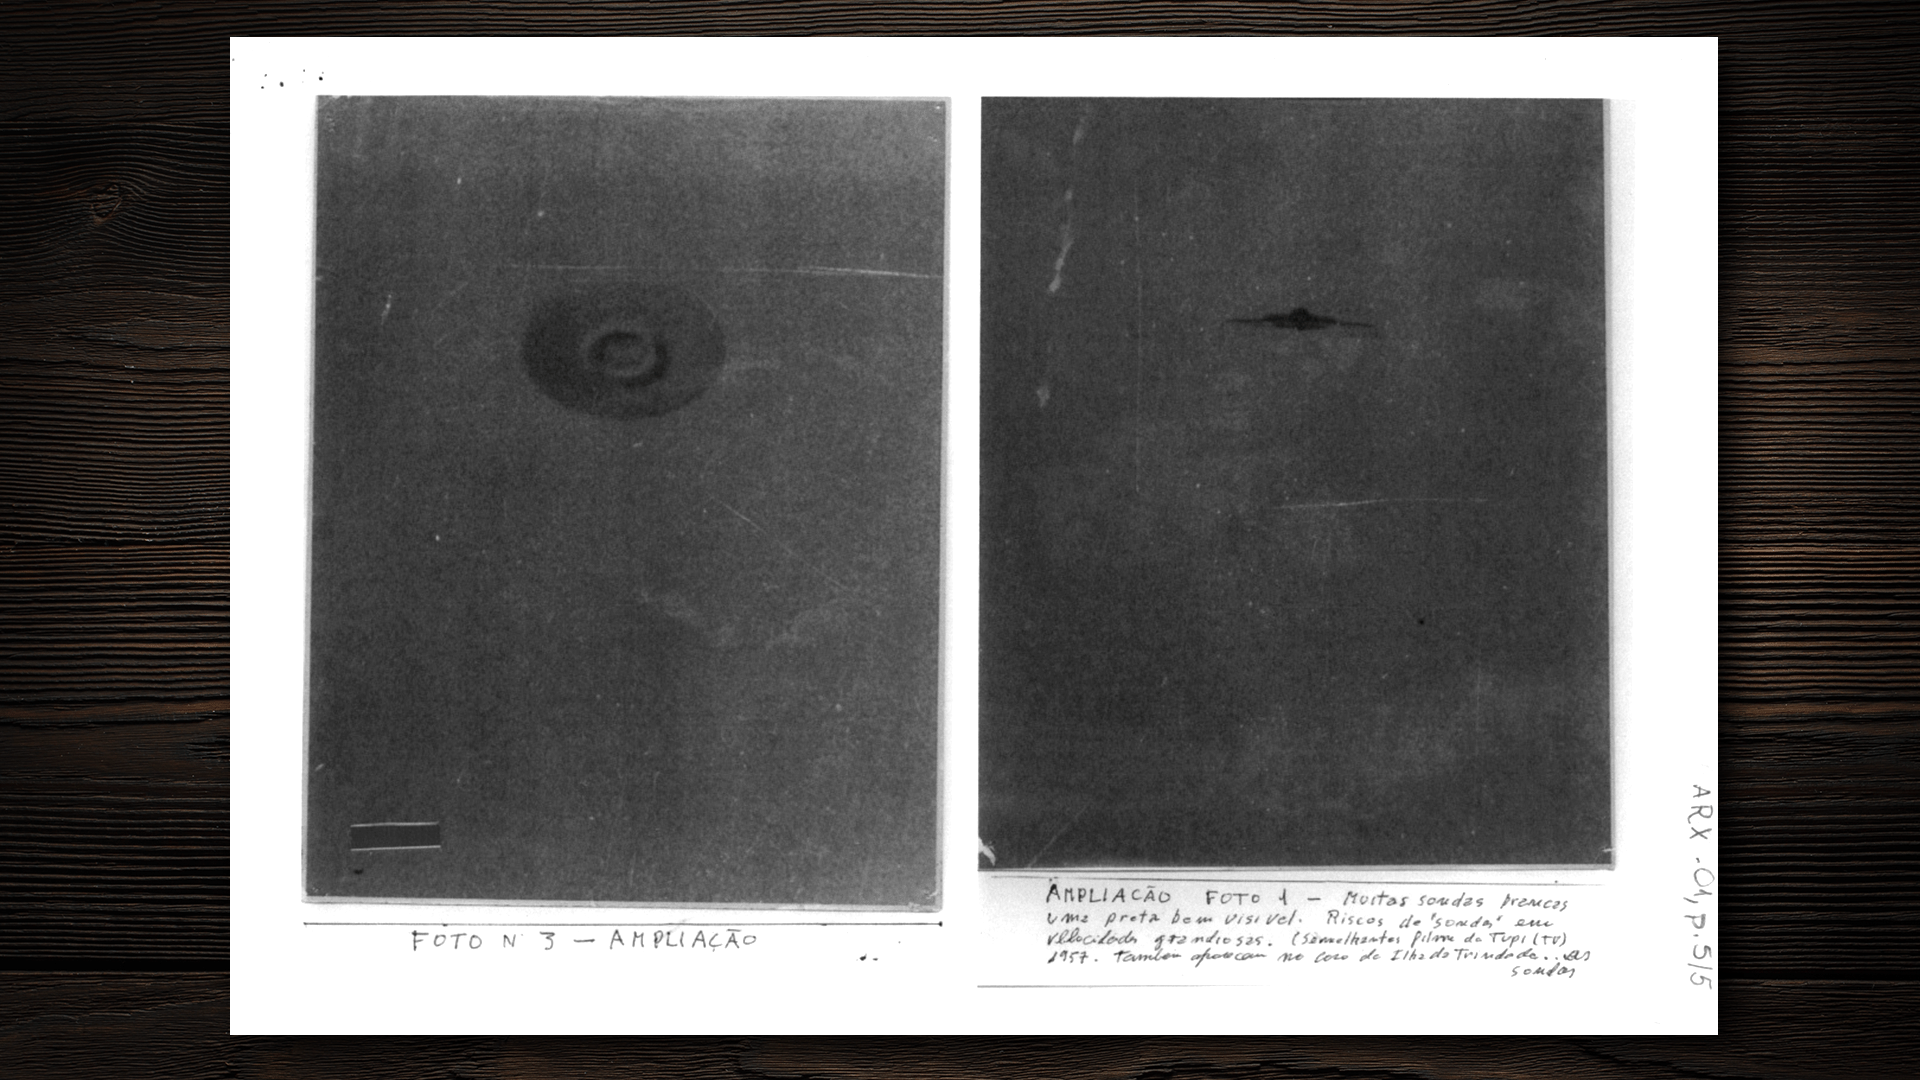 9.ago.2017 - Caso Barra da Tijuca, no Rio de Janeiro, em 1952: imagens entraram nos arquivos da Aeronáutica em 1954. Anos depois, o caso revelou-se uma fraude - Arte/UOL